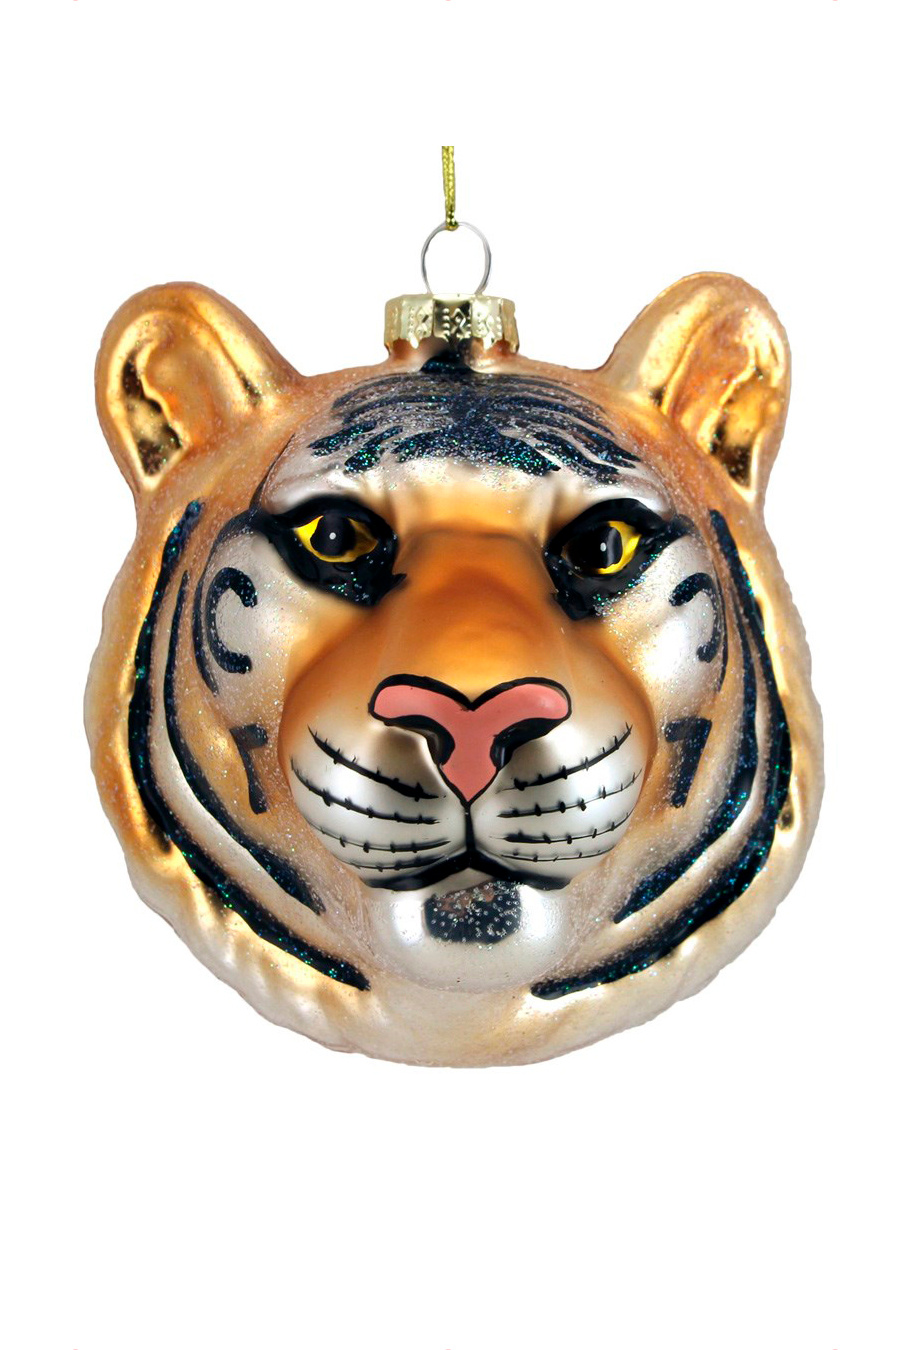 Gisela Graham Елочная игрушка "Голова тигра" 8 см (цвет ), артикул 00953 | Фото 1